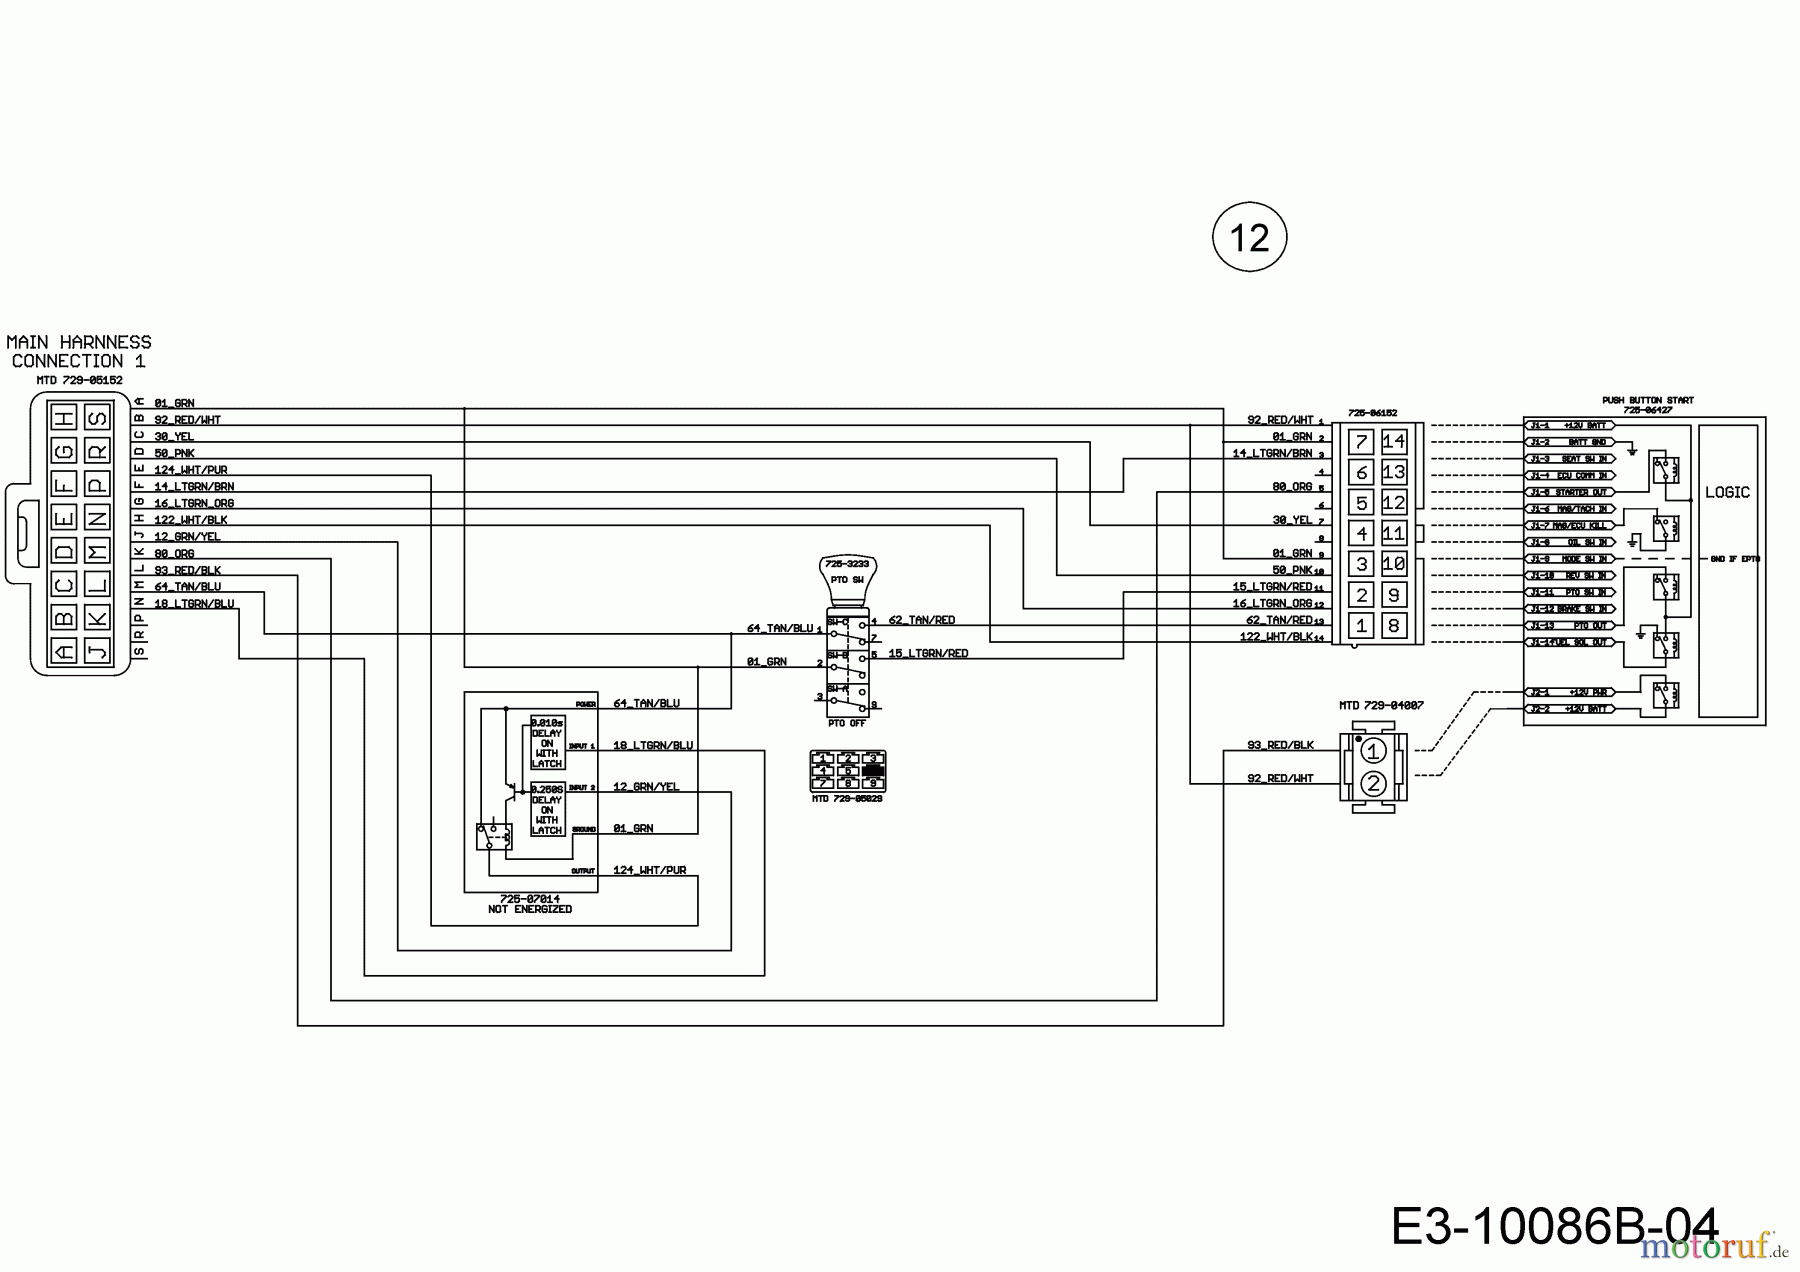  Wolf-Garten Rasentraktoren 106.220 H 13BAA1VR650  (2018) Schaltplan Elektromagnetkupplung